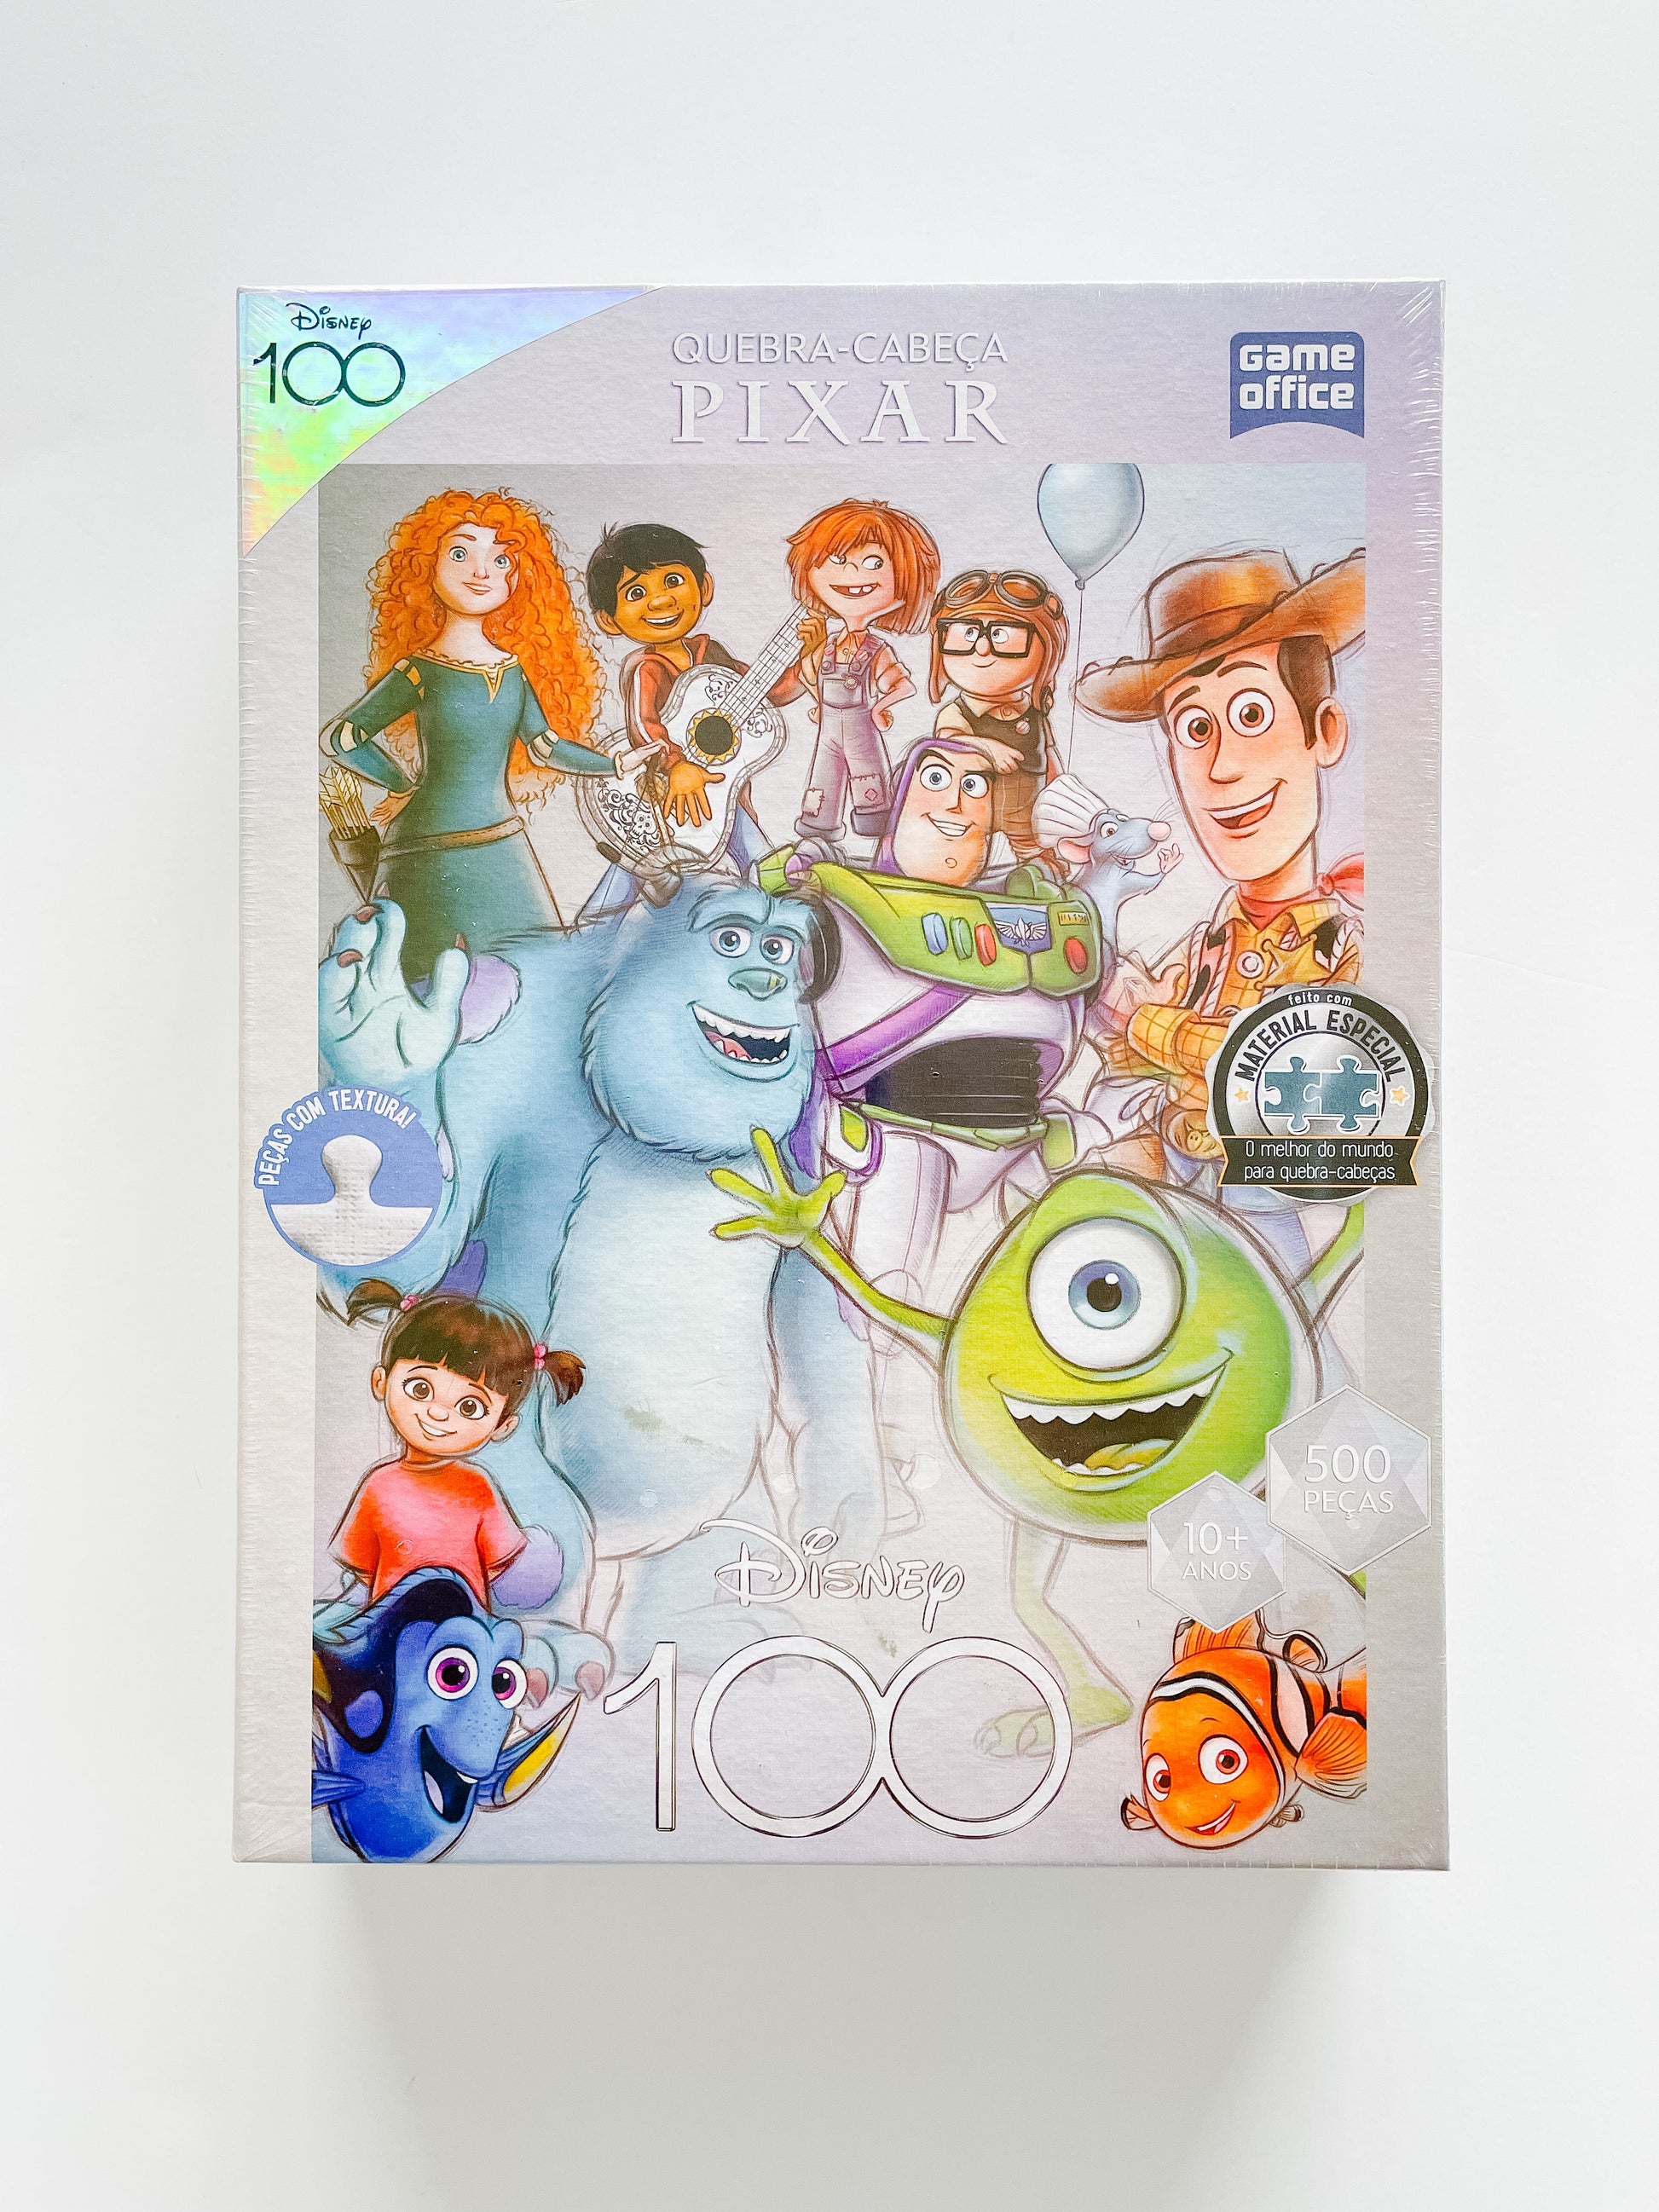 Disney 100 Years Pixar Puzzle – happiestpuzzlesonearth